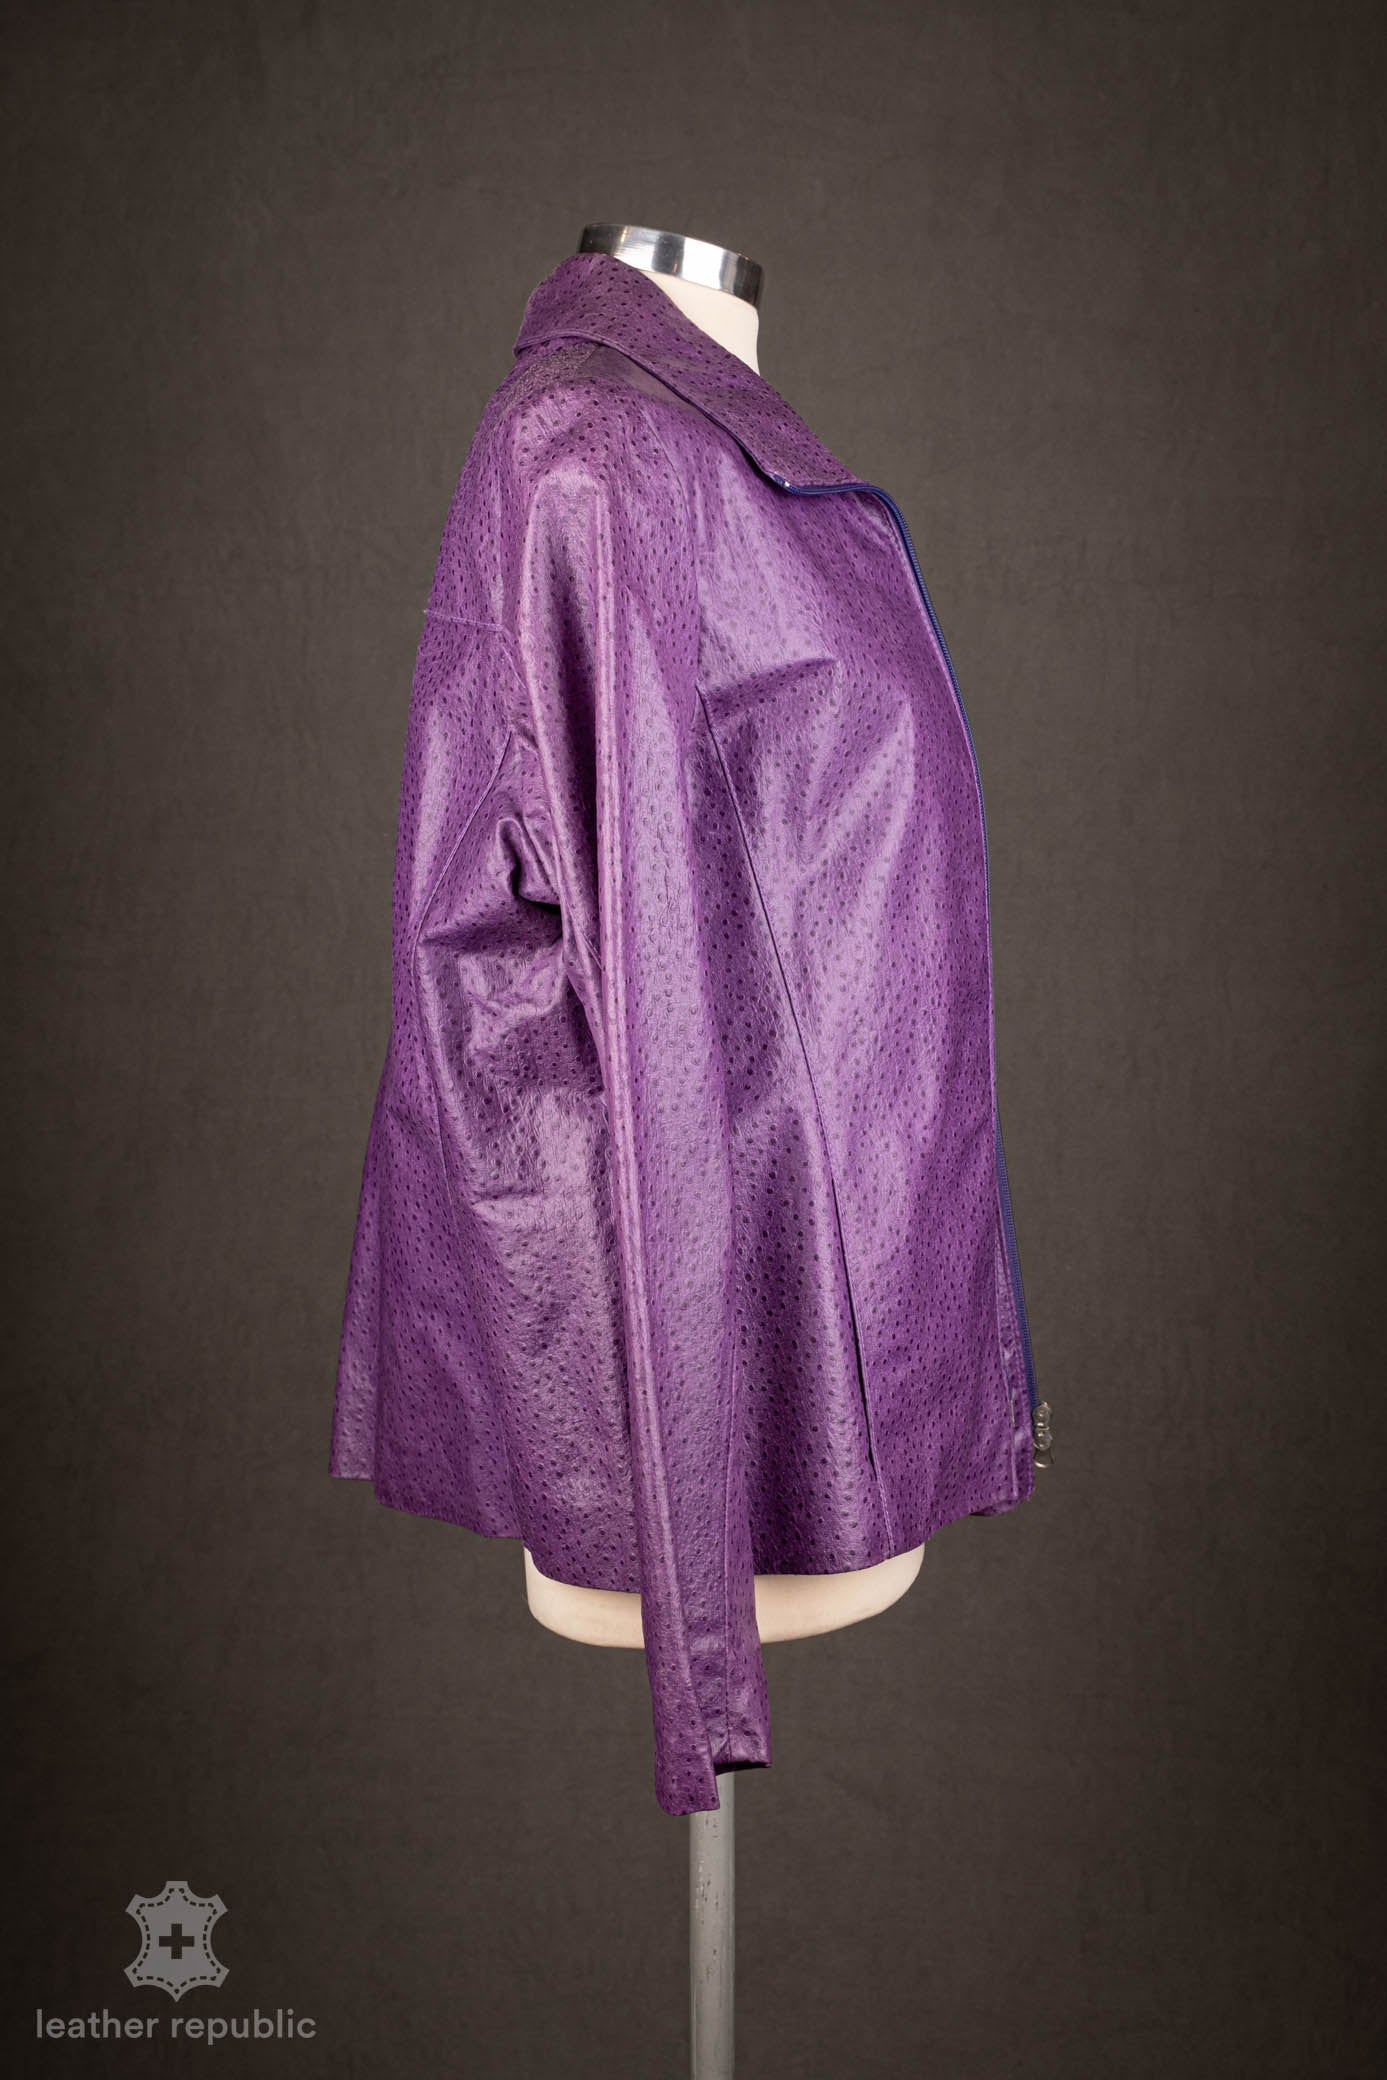 Damen Lederjacke (Leder), violett, Grösse 42/XL